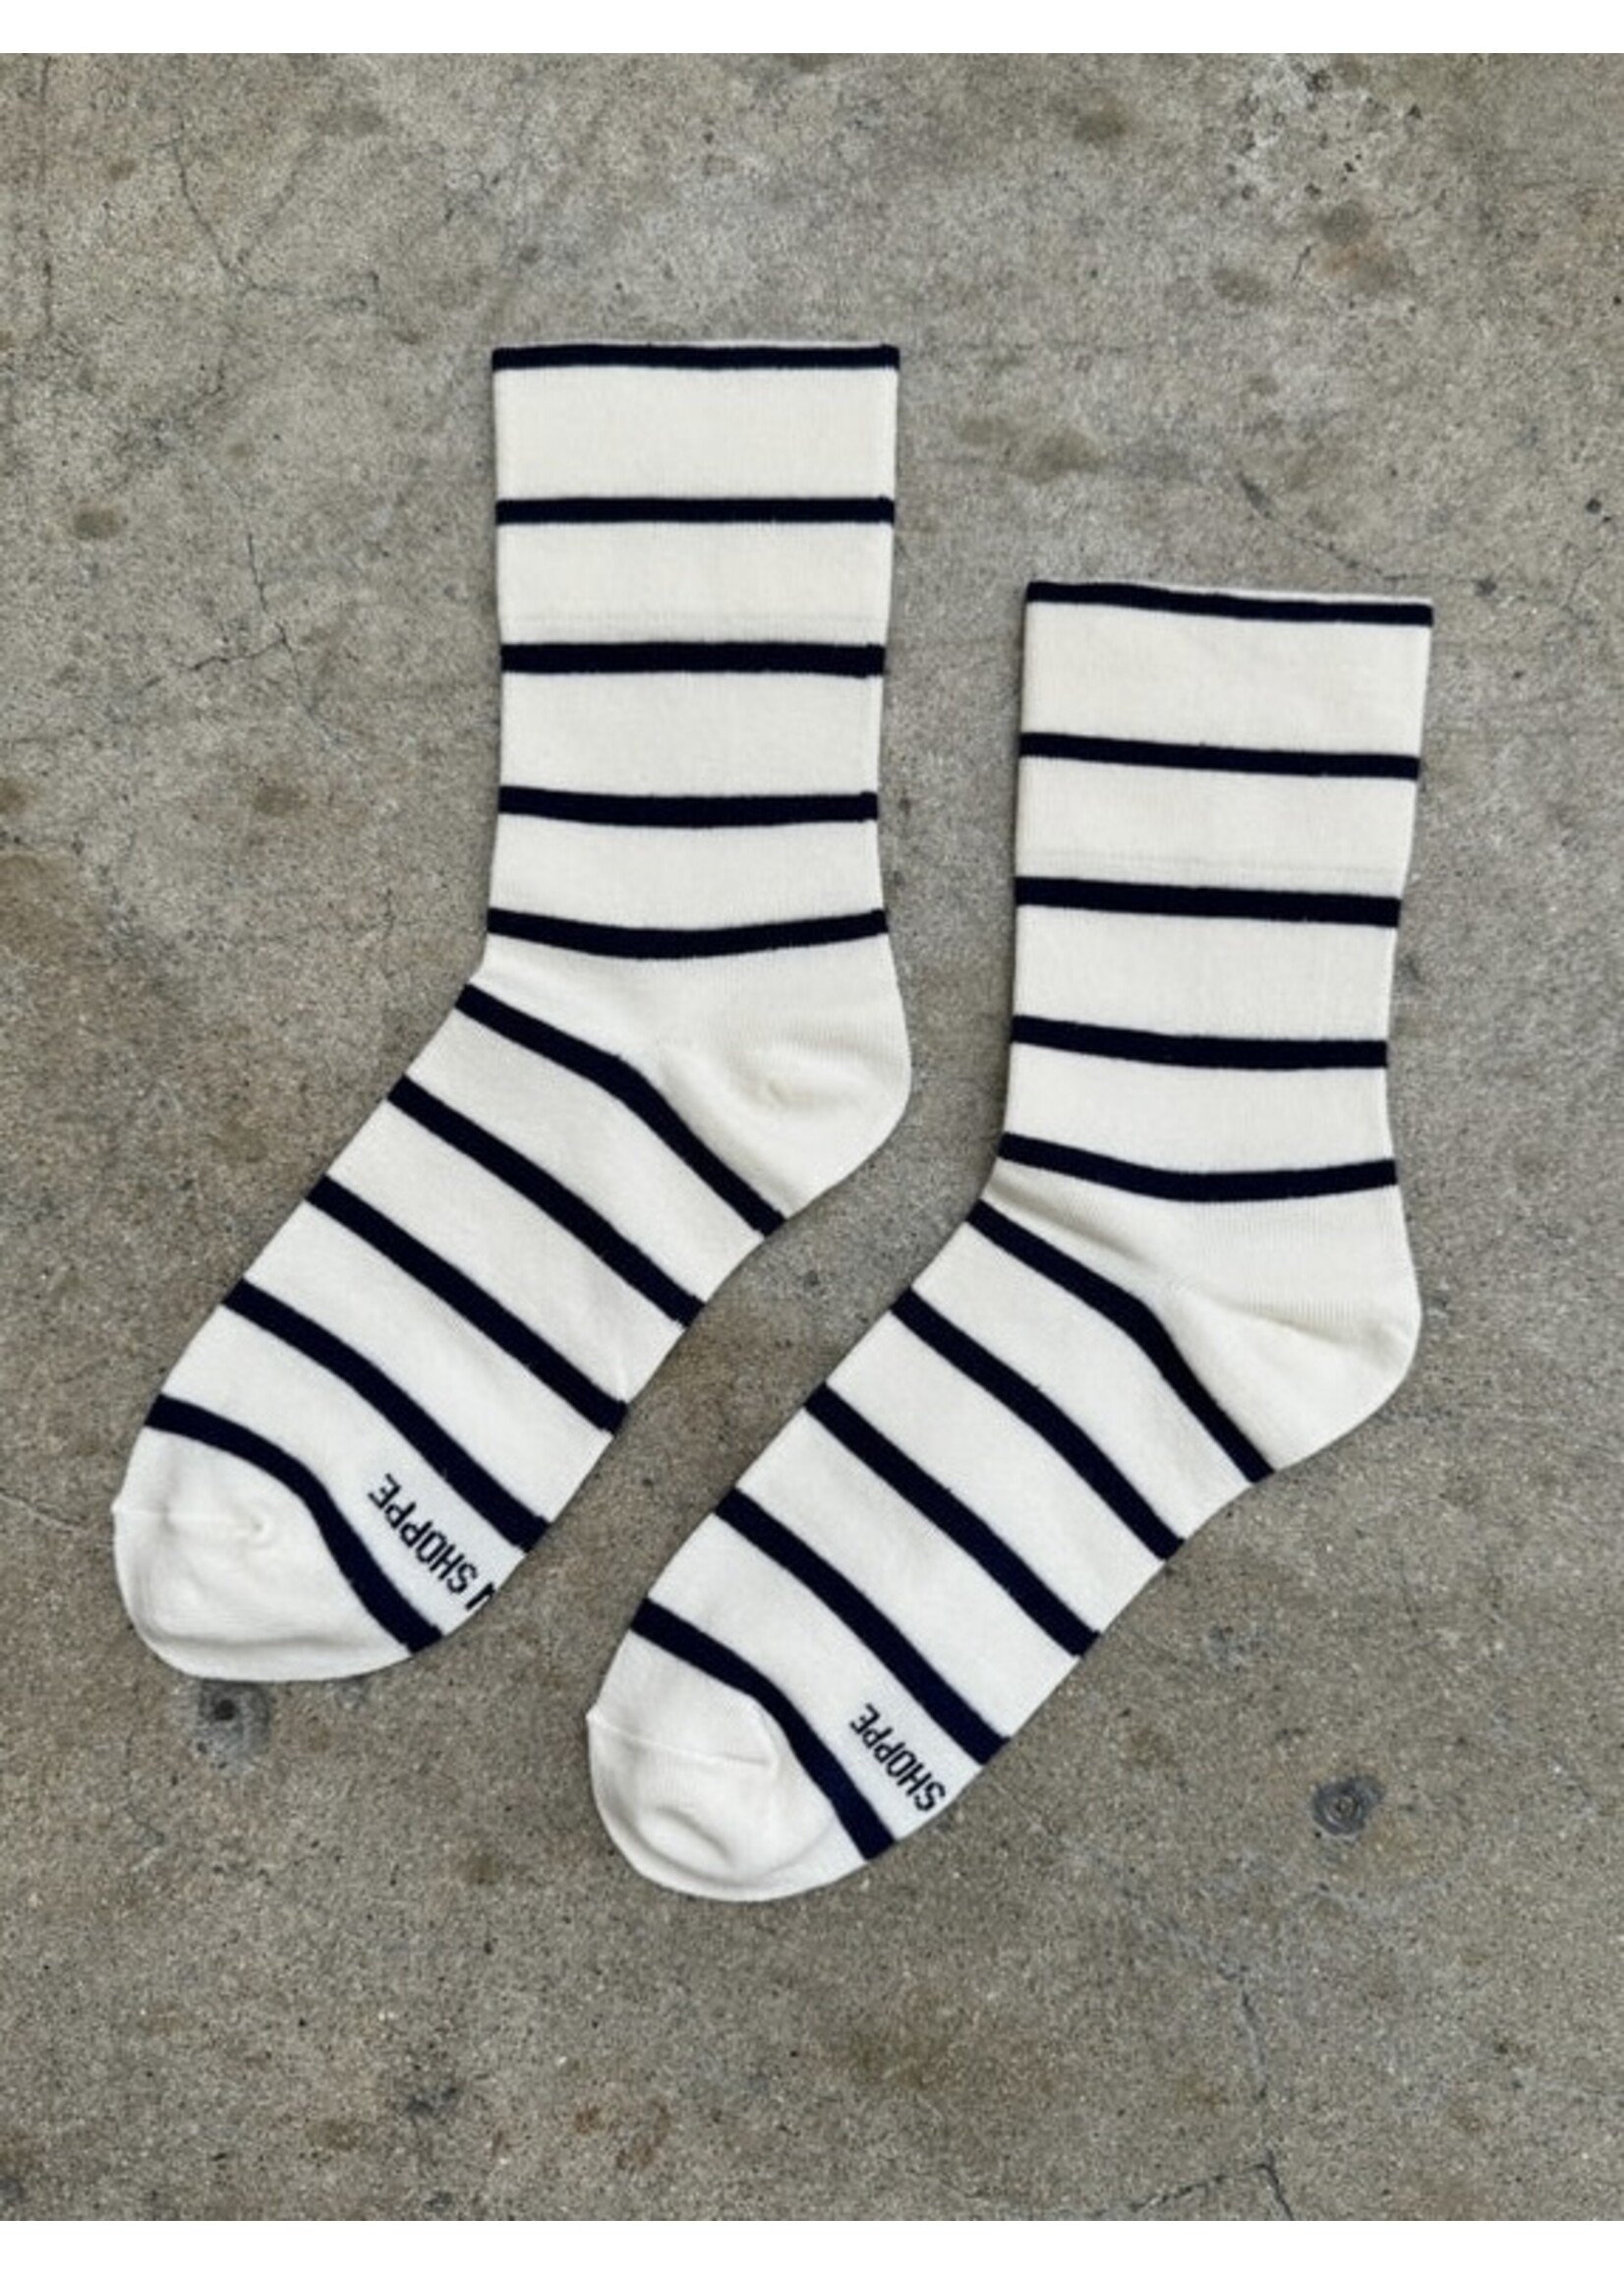 Le Bon Shoppe "Wally" socks by Le Bon Shoppe